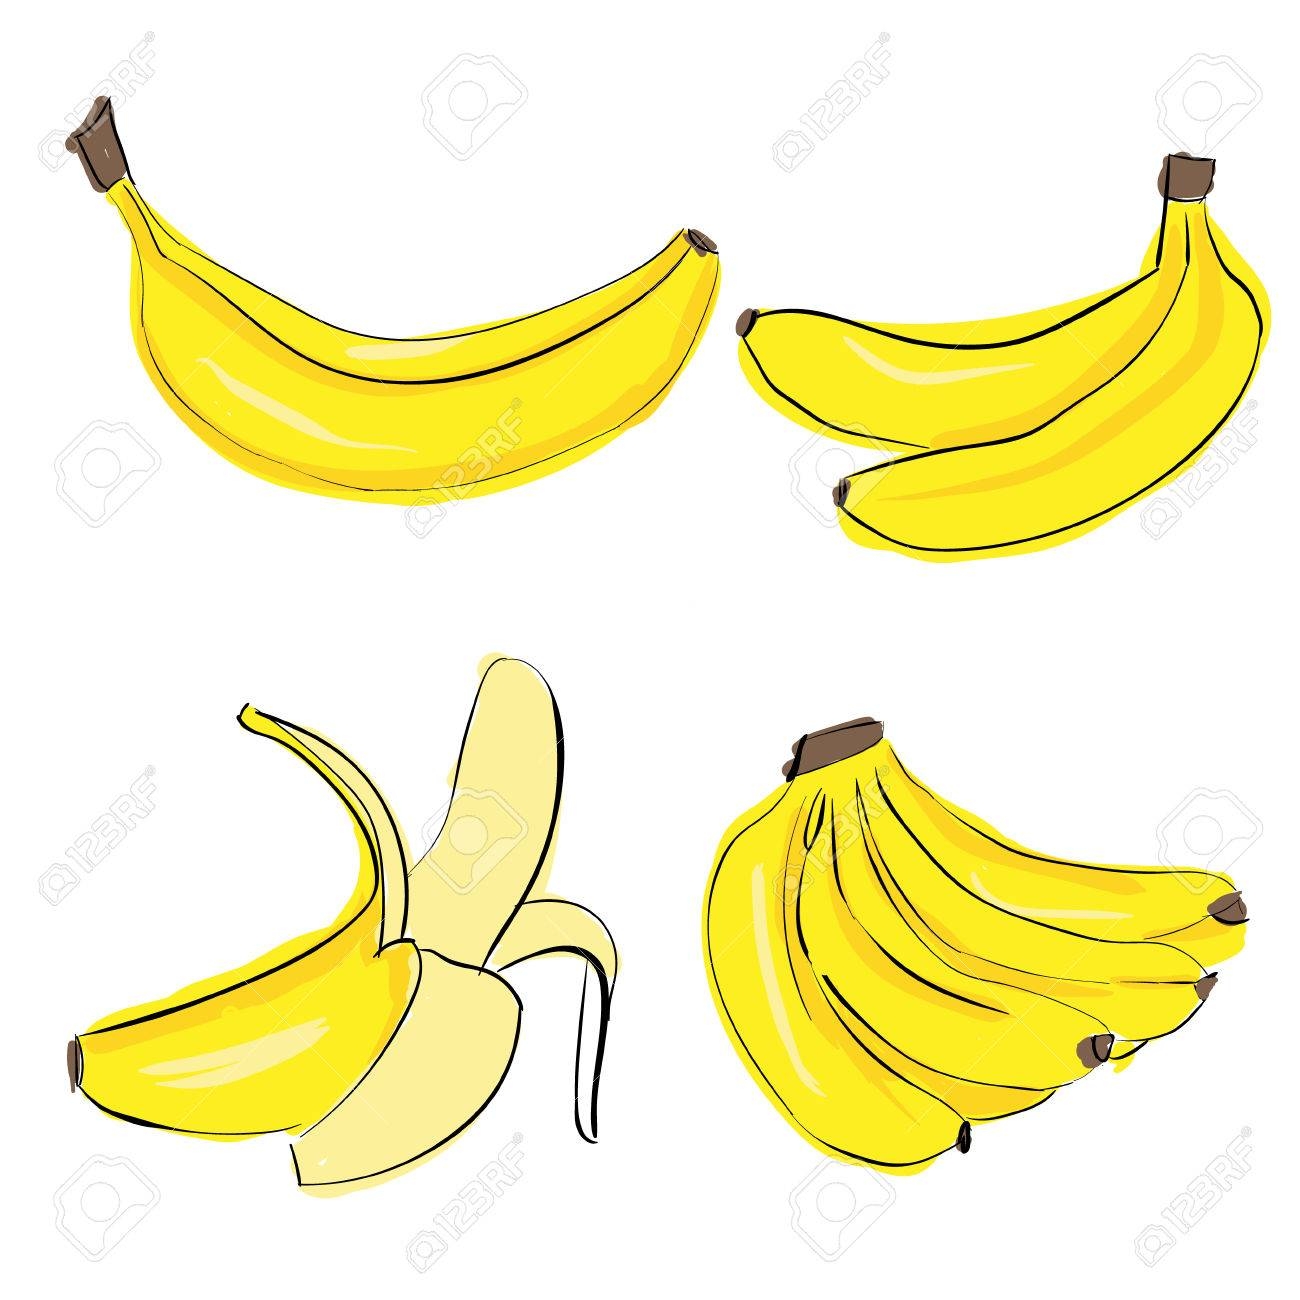 Обои для рабочего стола Связка бананов фото - Раздел обоев: Еда и напитки